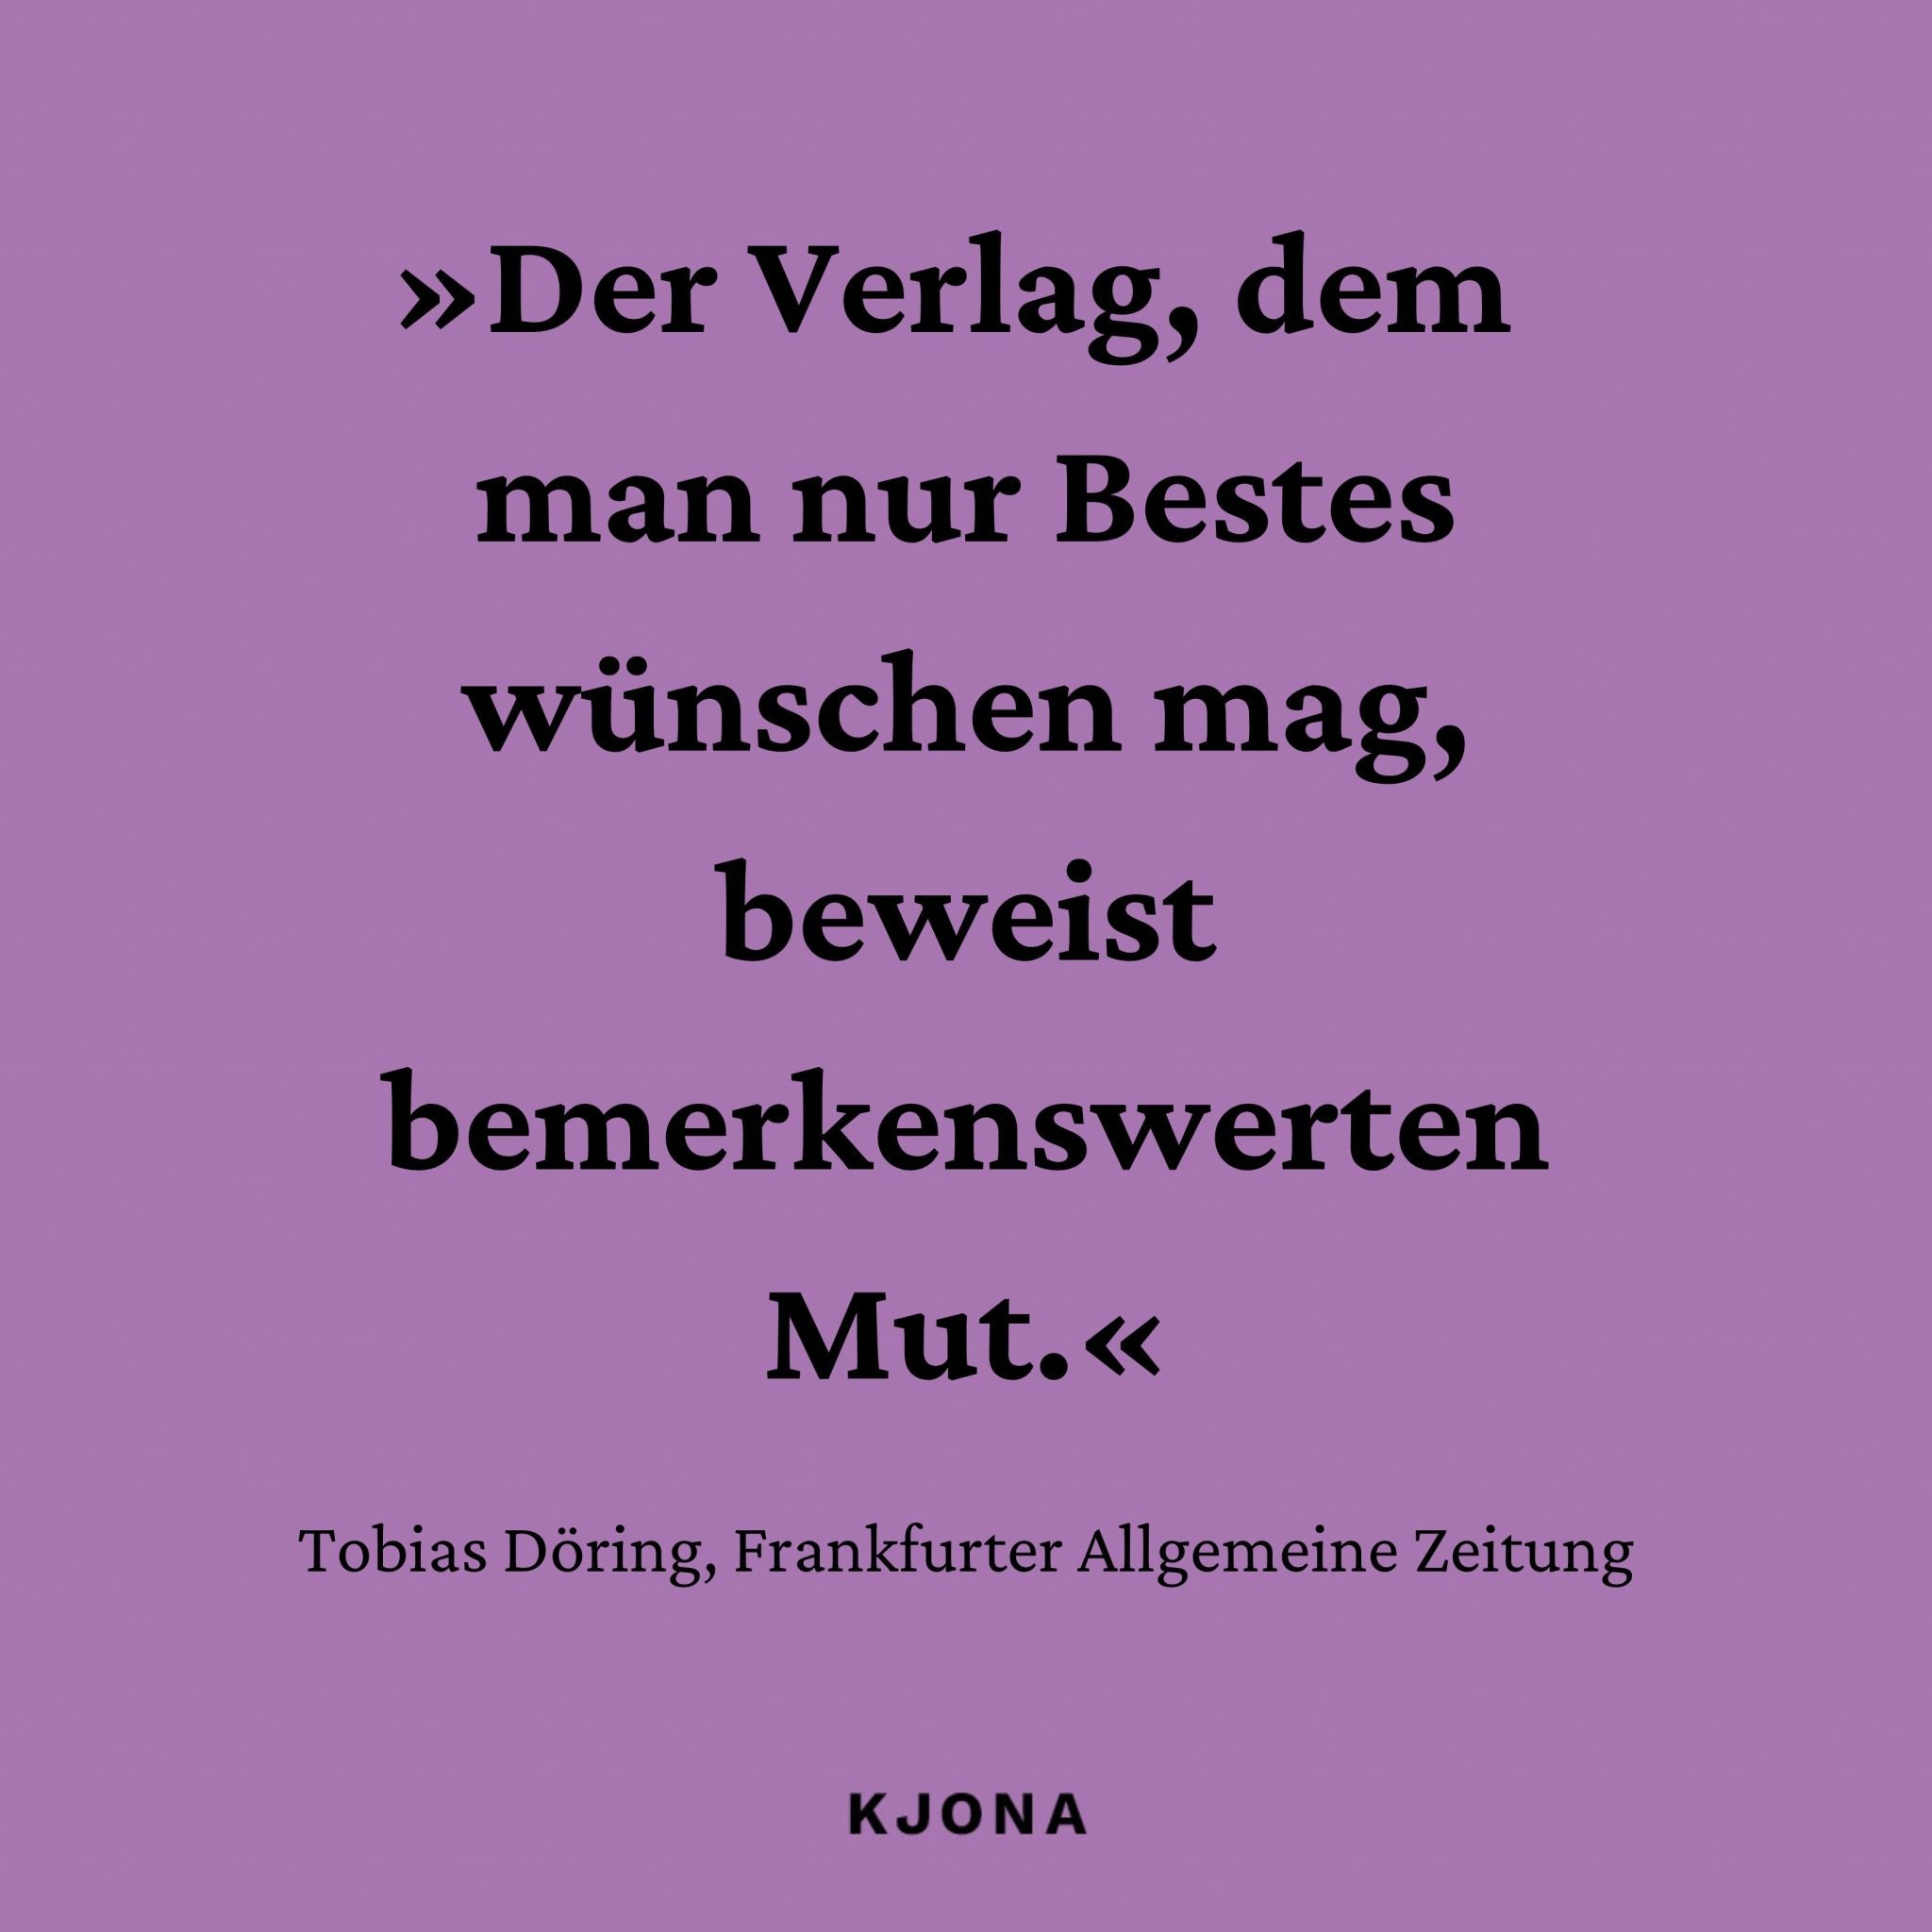 »Der Verlag, dem man nur Bestes wünschen mag, beweist bemerkenswerten Mut.« Zitat von Tobias Döring, Frankfurter Allgemeine Zeitung